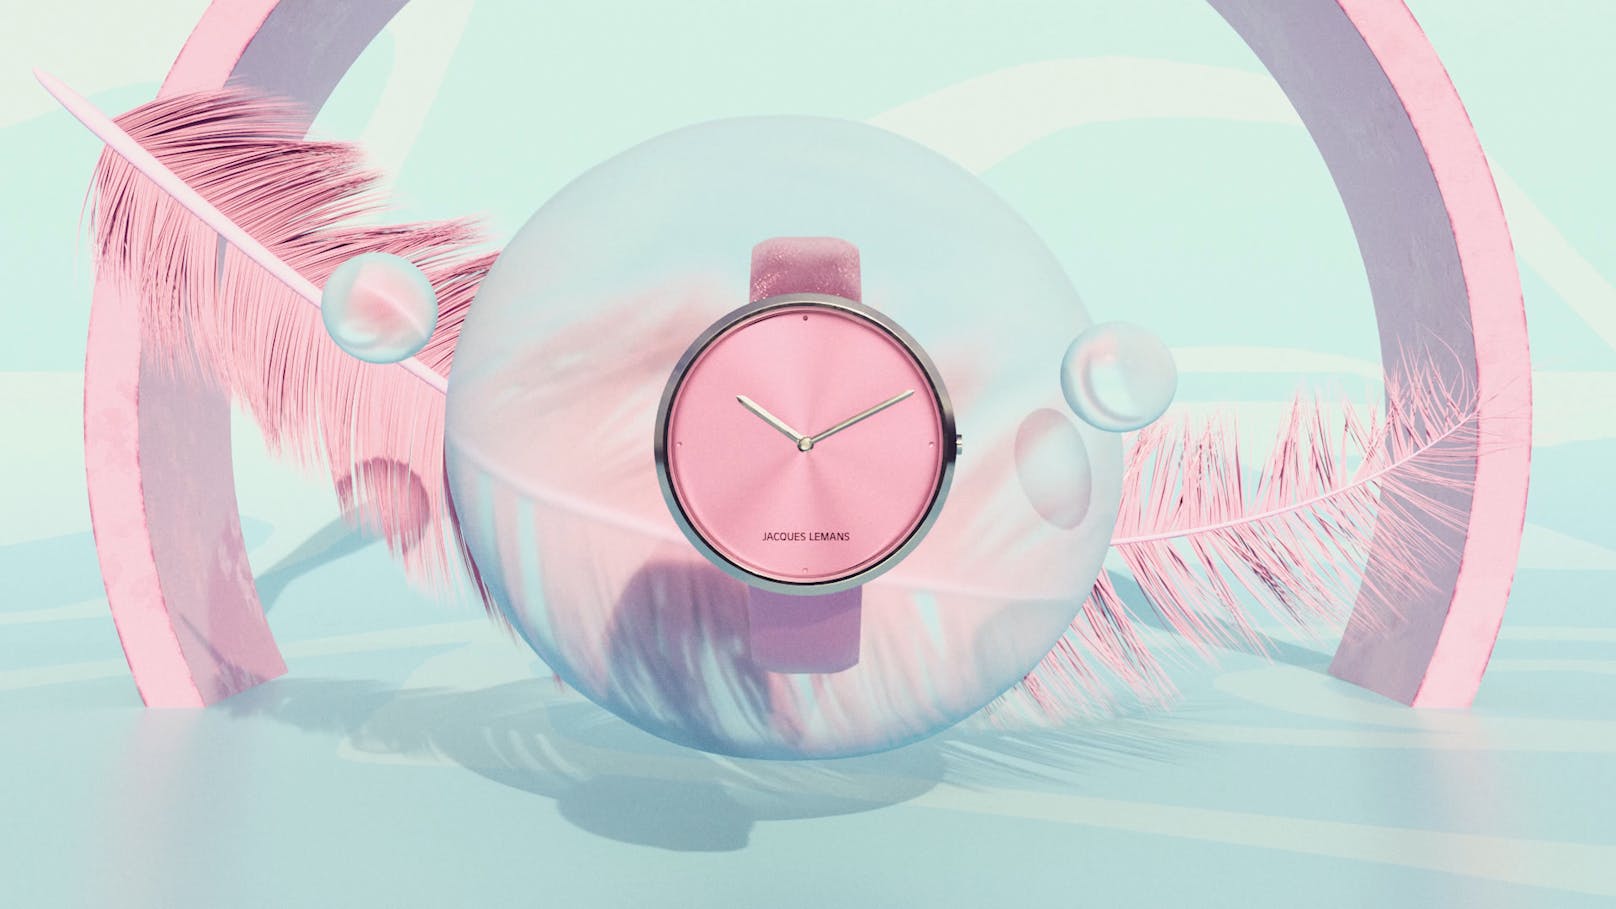 Jetzt teilnehmen und eine Uhr der neuen Jacques Lemans Design Collection gewinnen!